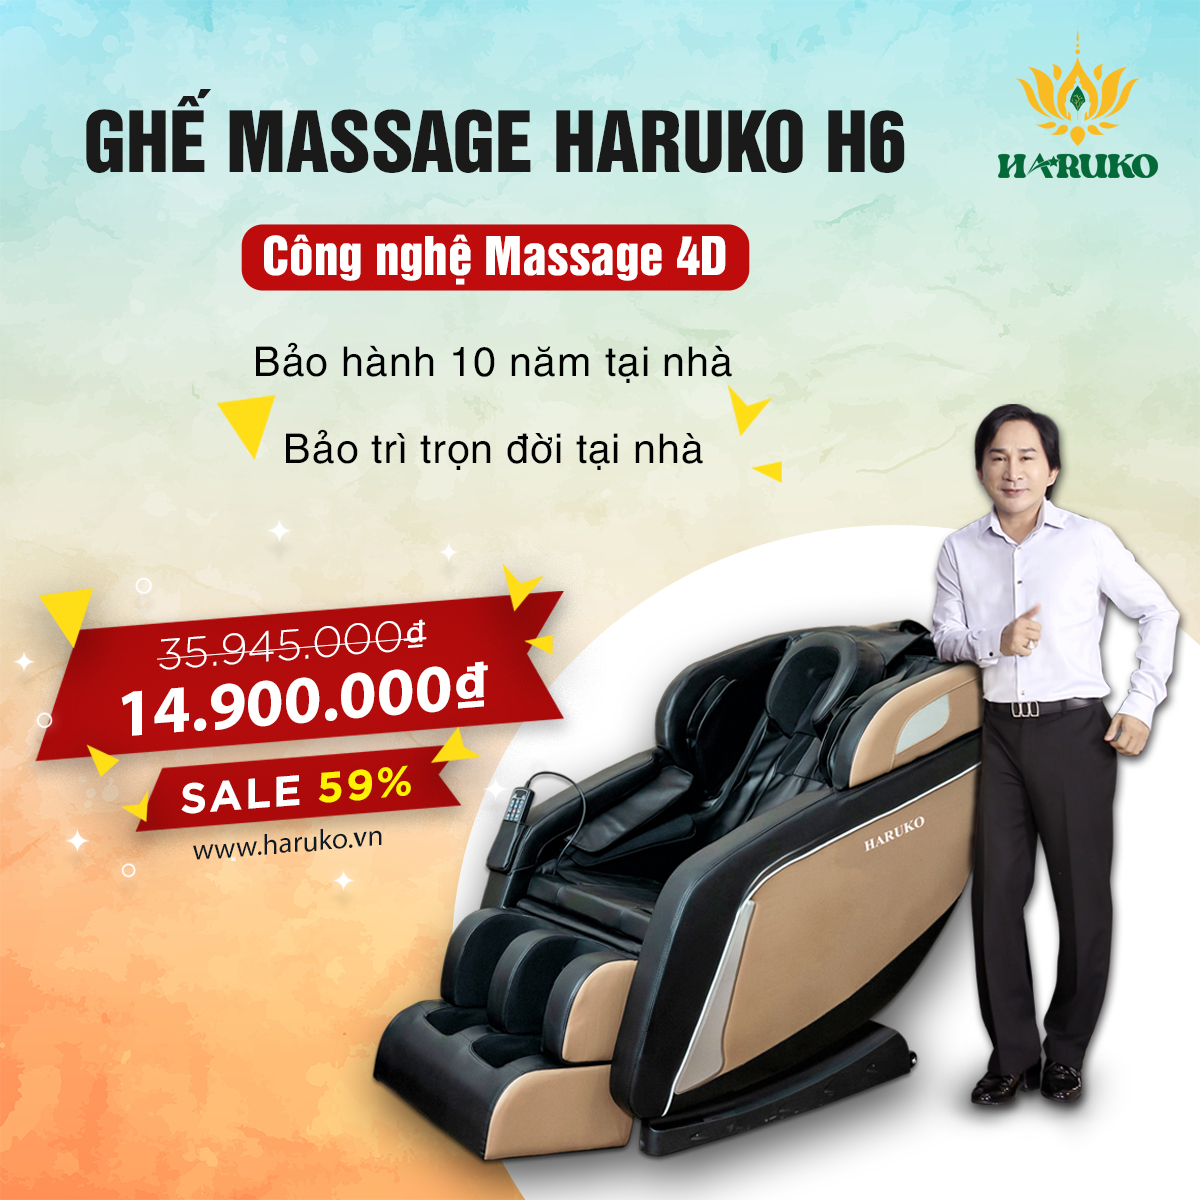 Haruko-H6 với công nghệ massage mô phỏng tay người là lựa chọn được nhiều khách hàng tin dùng